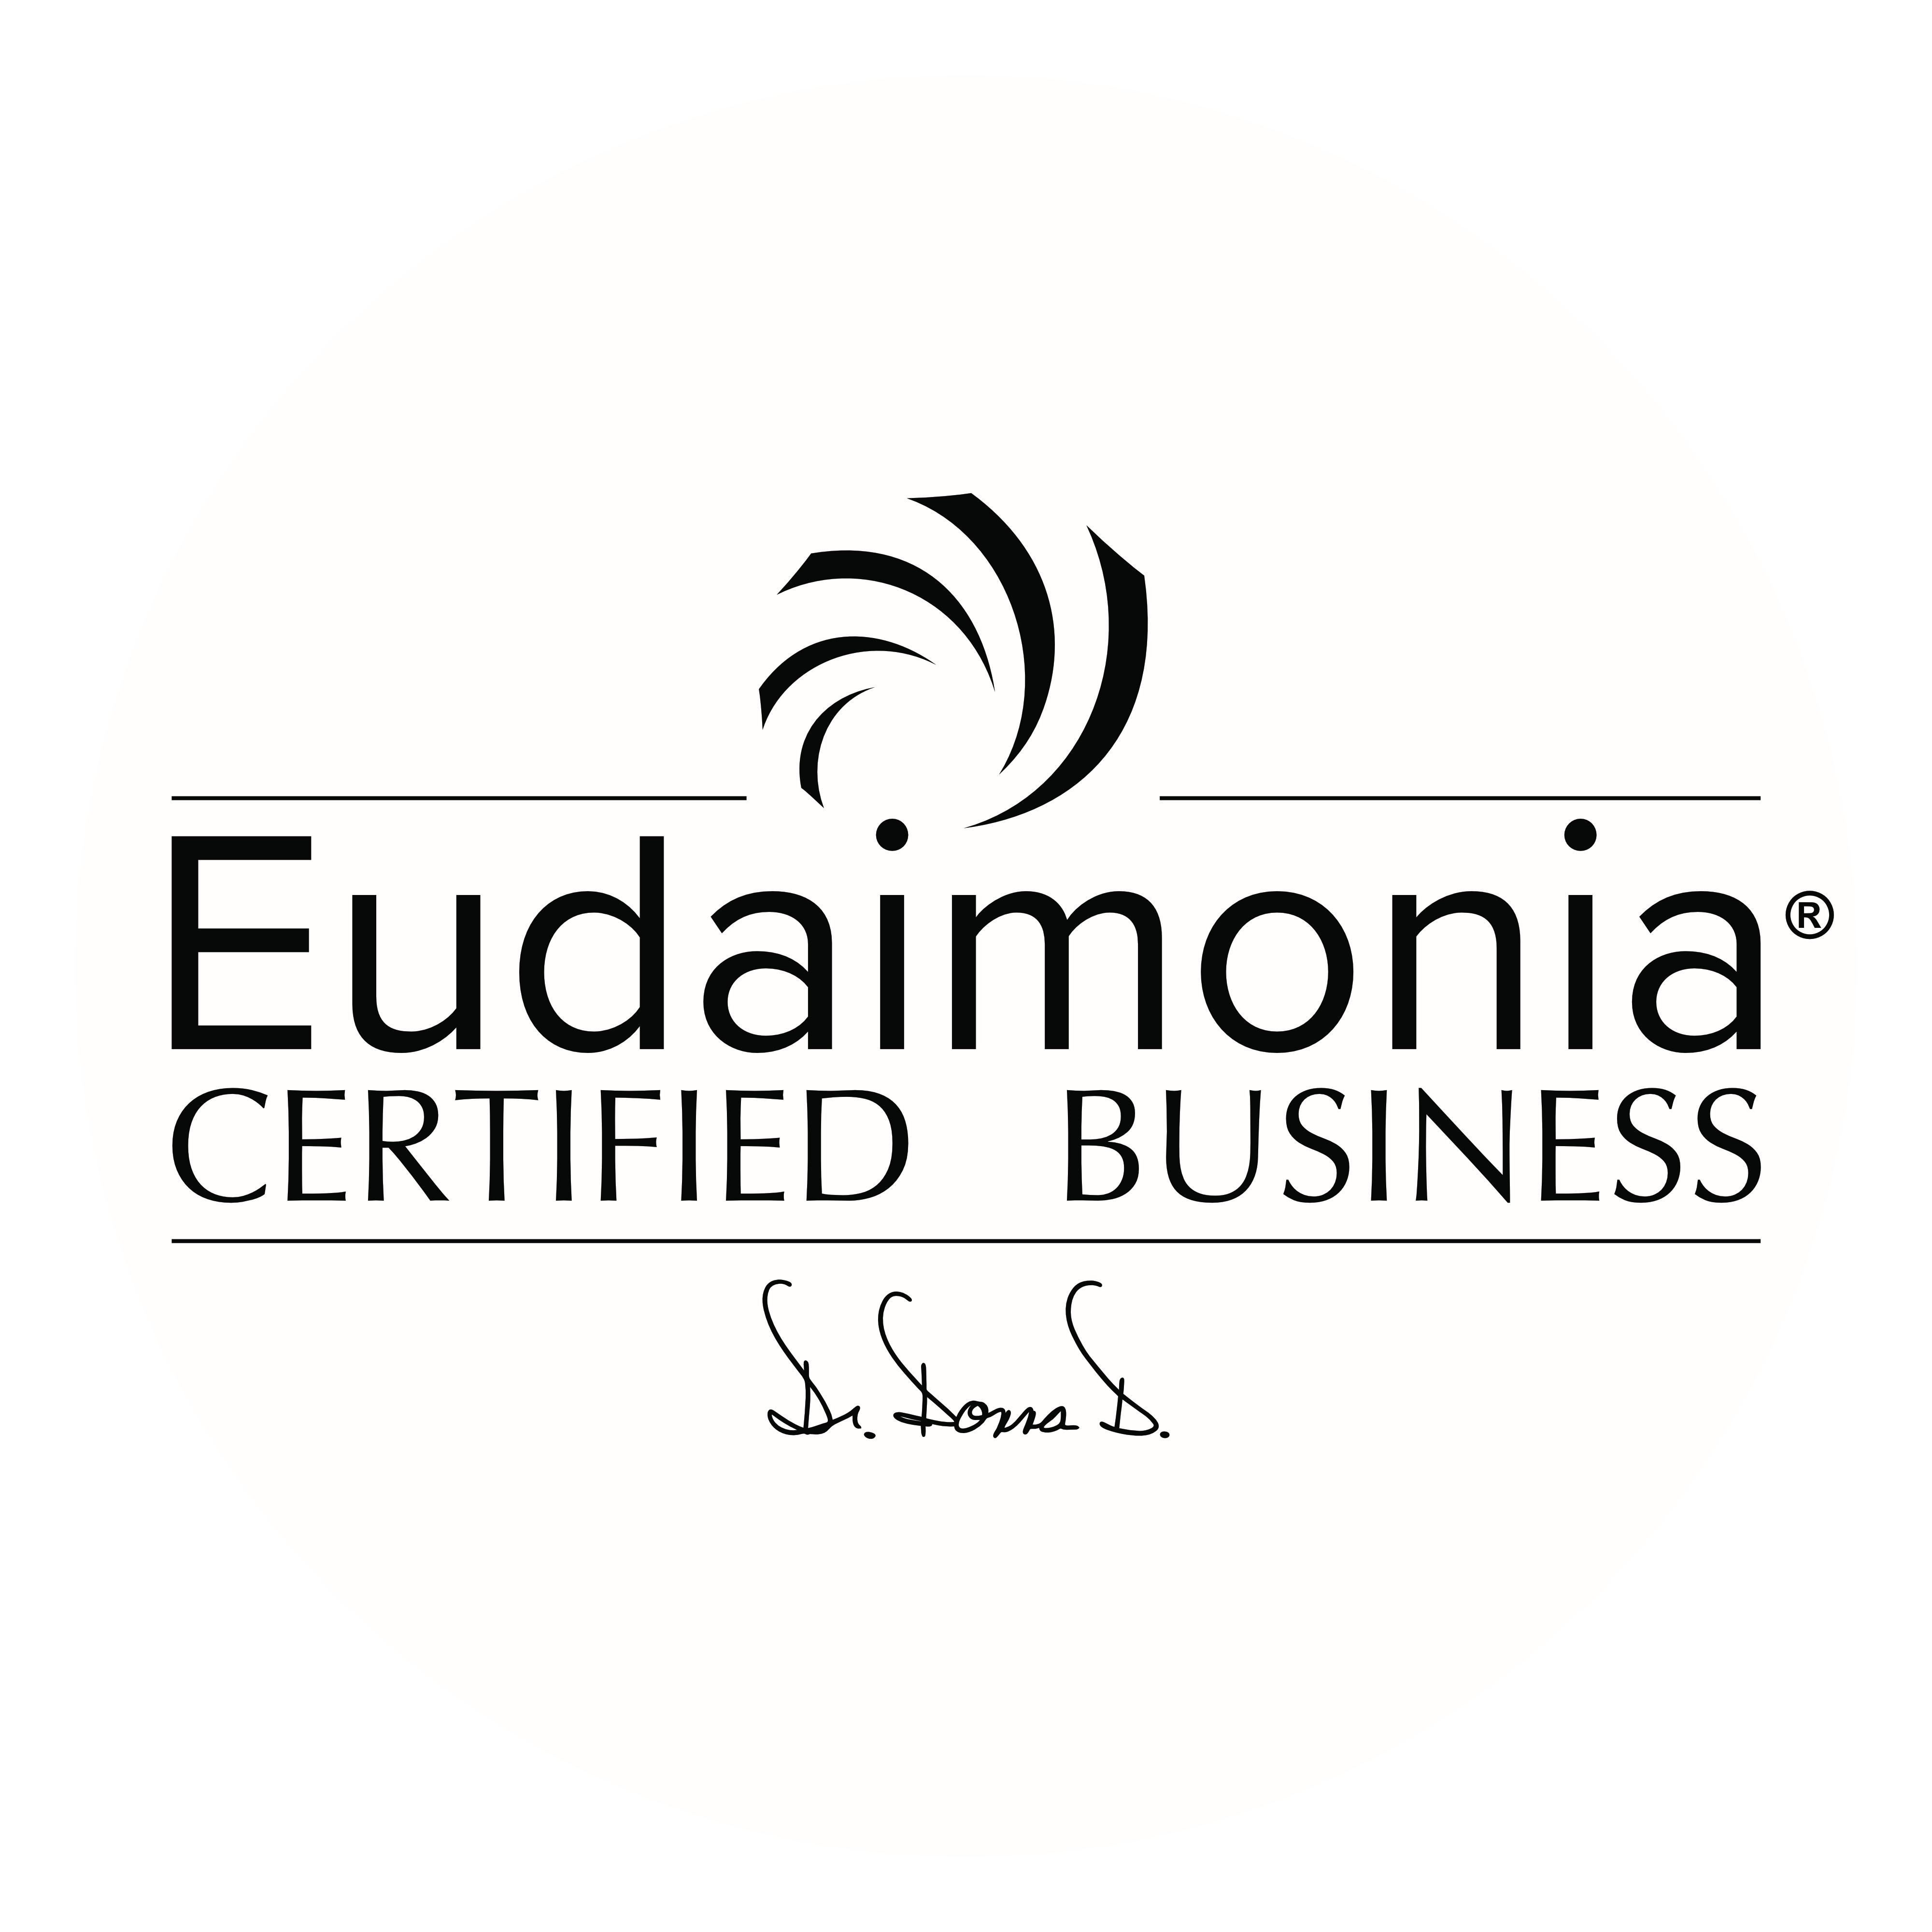 Eudaimonia Certified Business